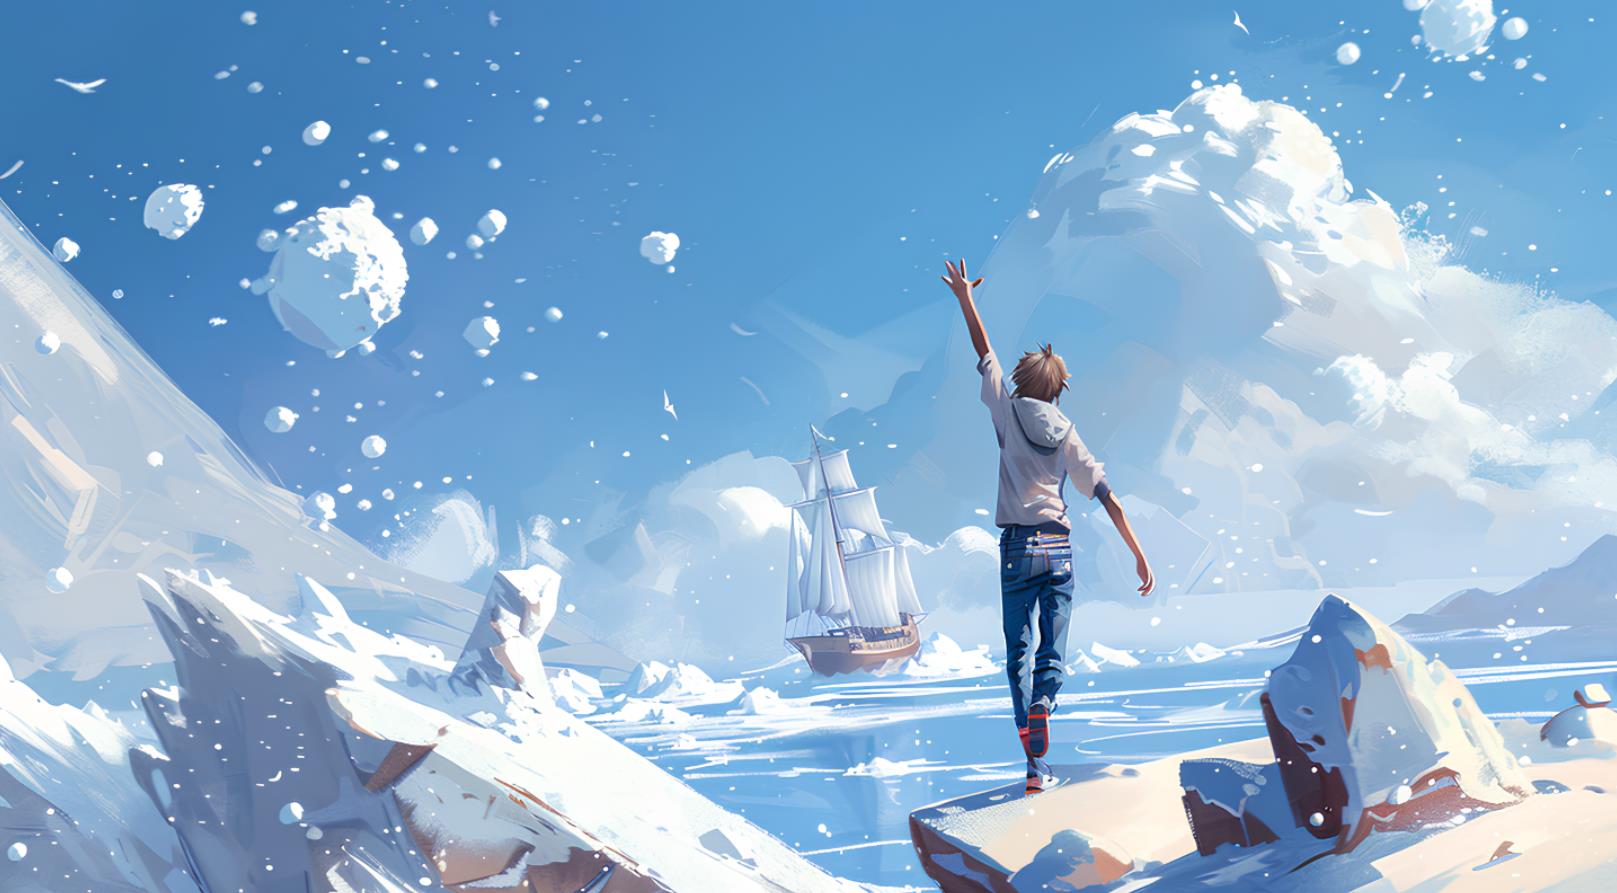 一个留着短发、穿着牛仔裤的年轻人站在一座冰山的山顶上，挥舞着手臂去抓眼前飞舞的雪球